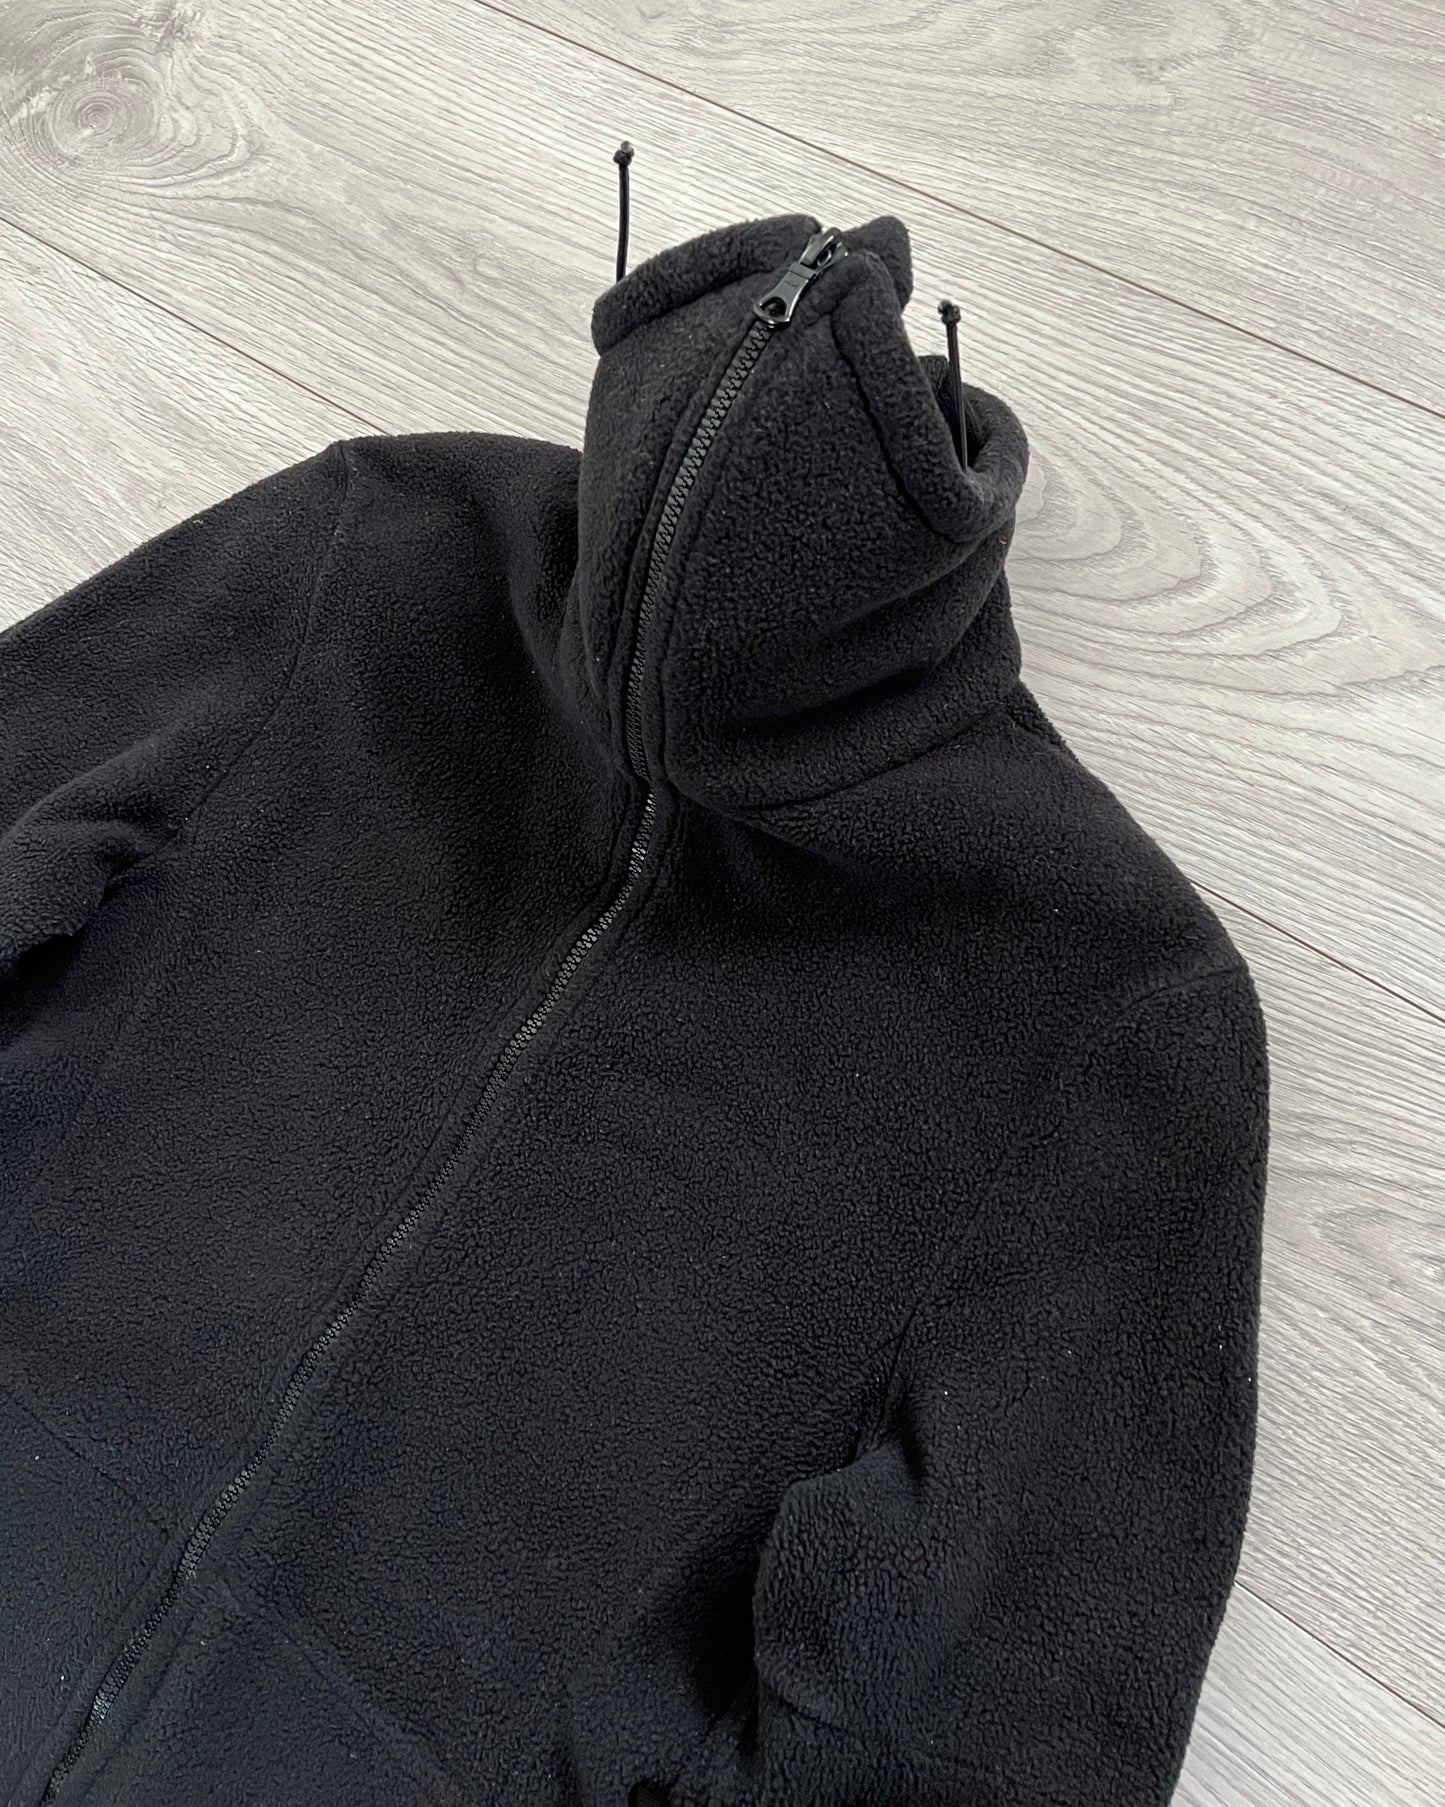 Vexed Generation 1990s Ninja Fleece Jacket - Size Womens M / Mens S